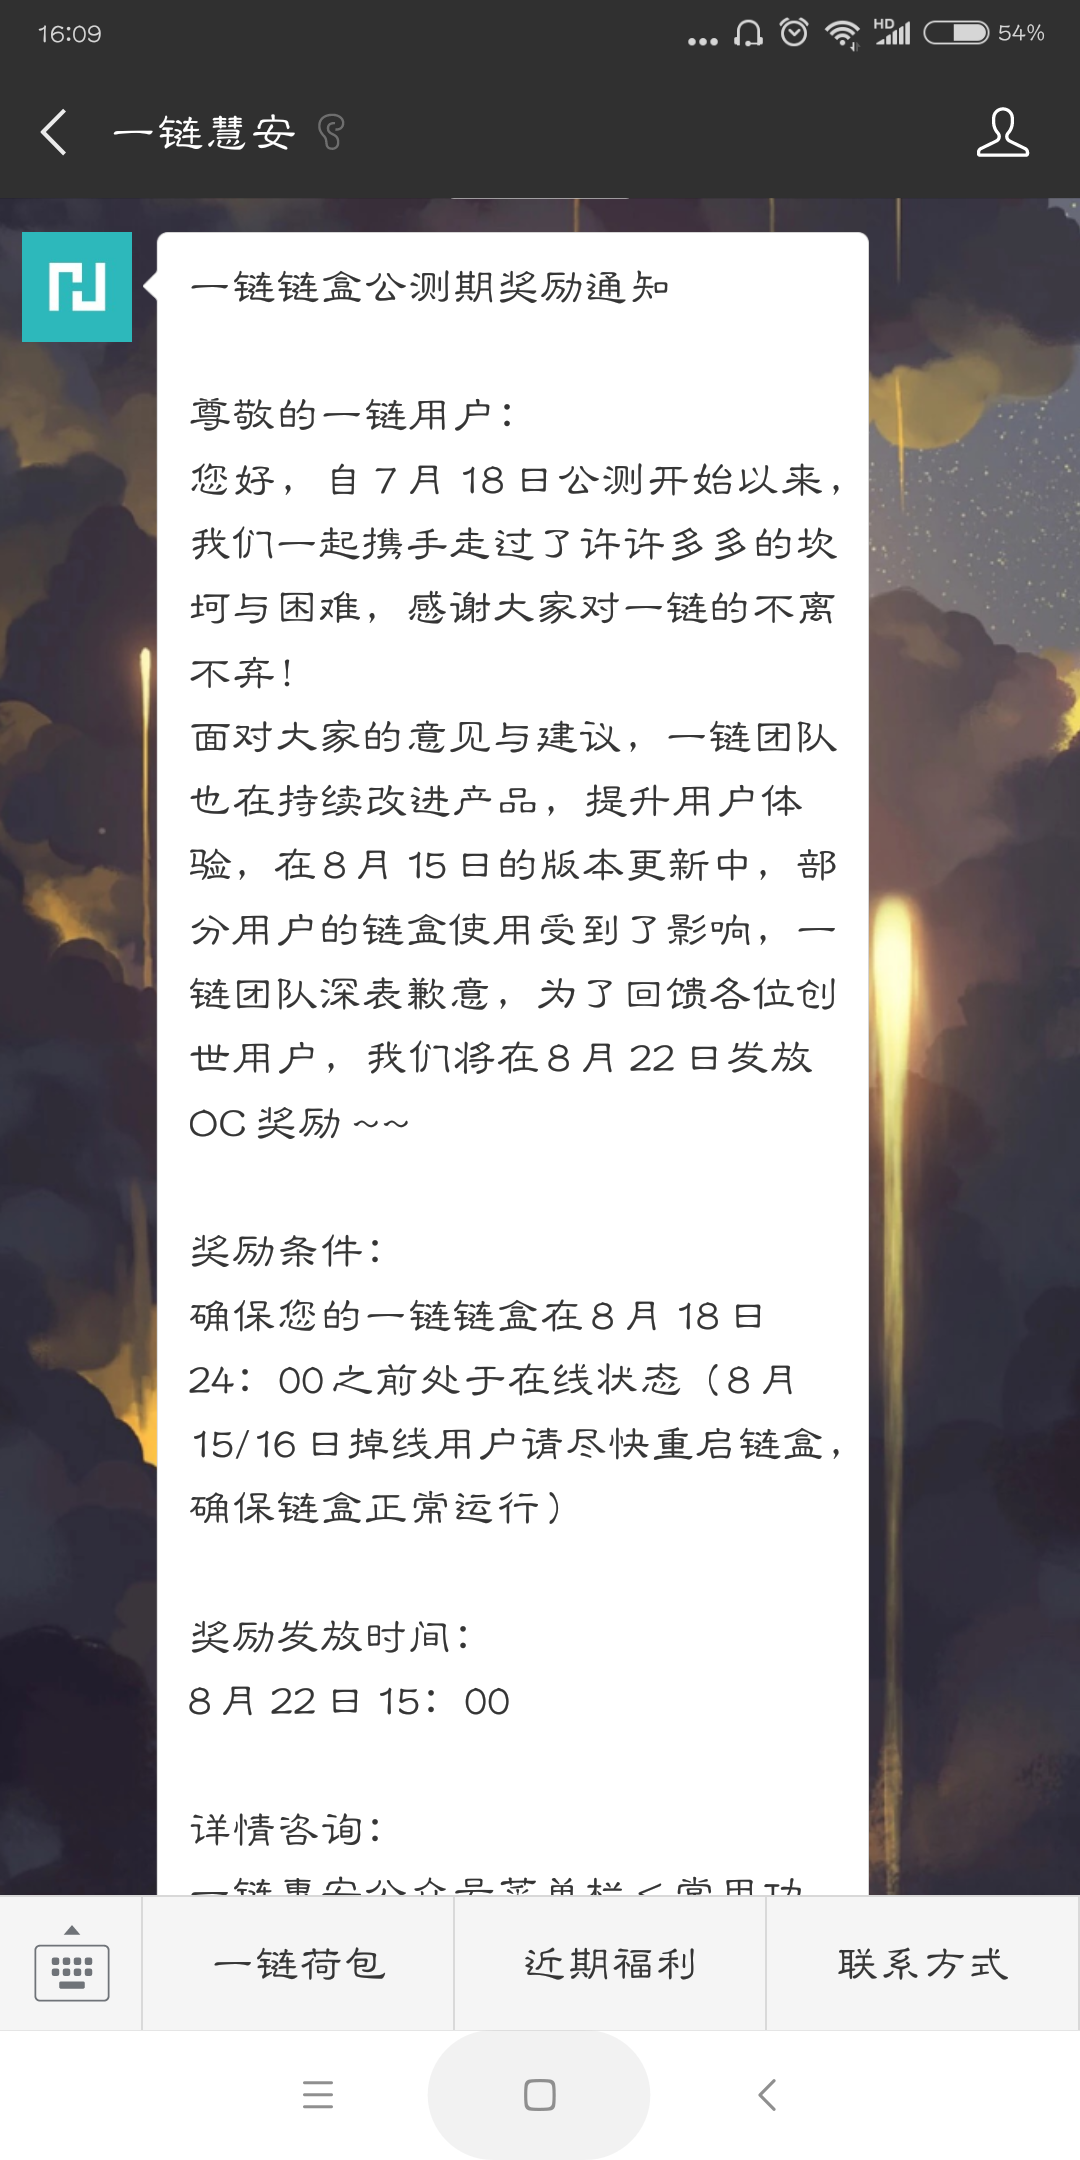 Screenshot_2018-08-17-16-09-19-313_com.tencent.mm.png